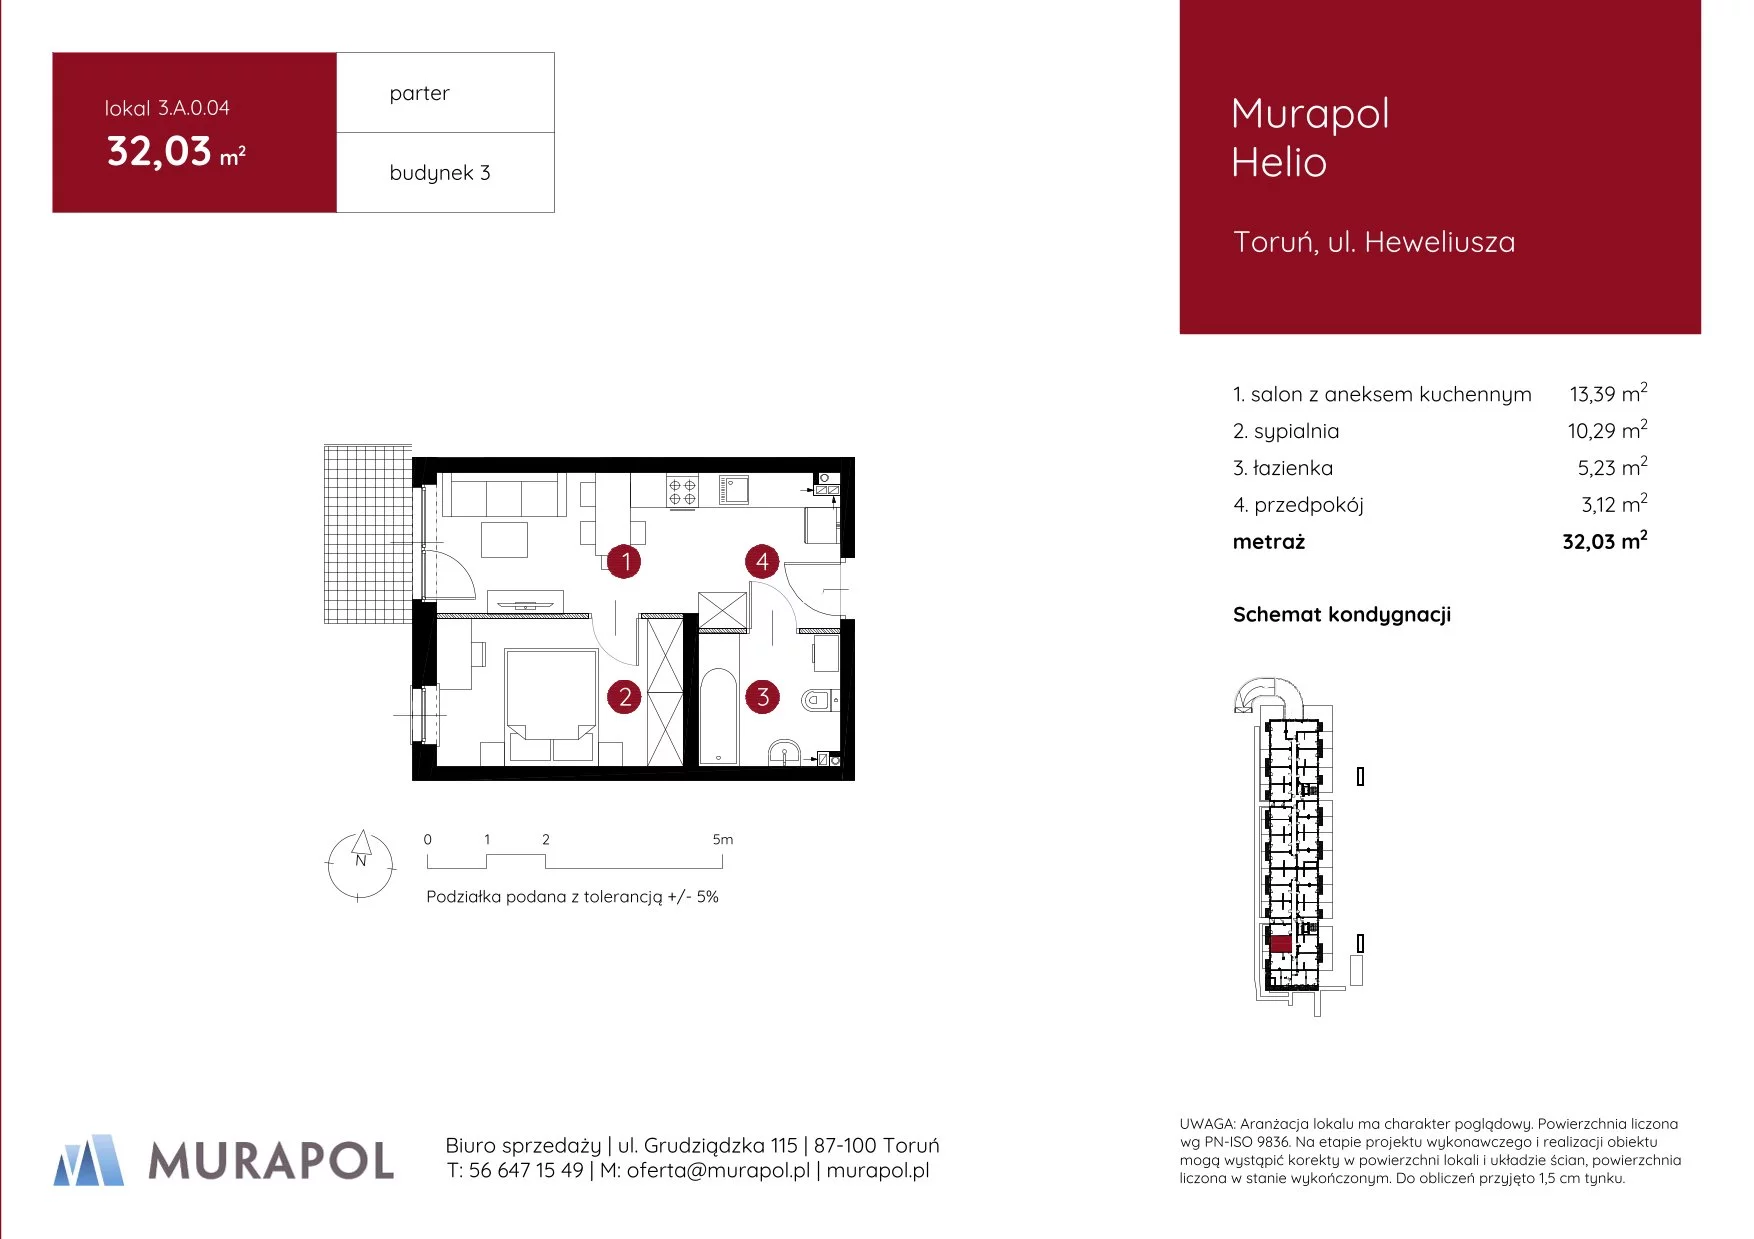 Mieszkanie 32,03 m², parter, oferta nr 3.A.0.04, Murapol Helio, Toruń, Wrzosy, JAR, ul. Heweliusza